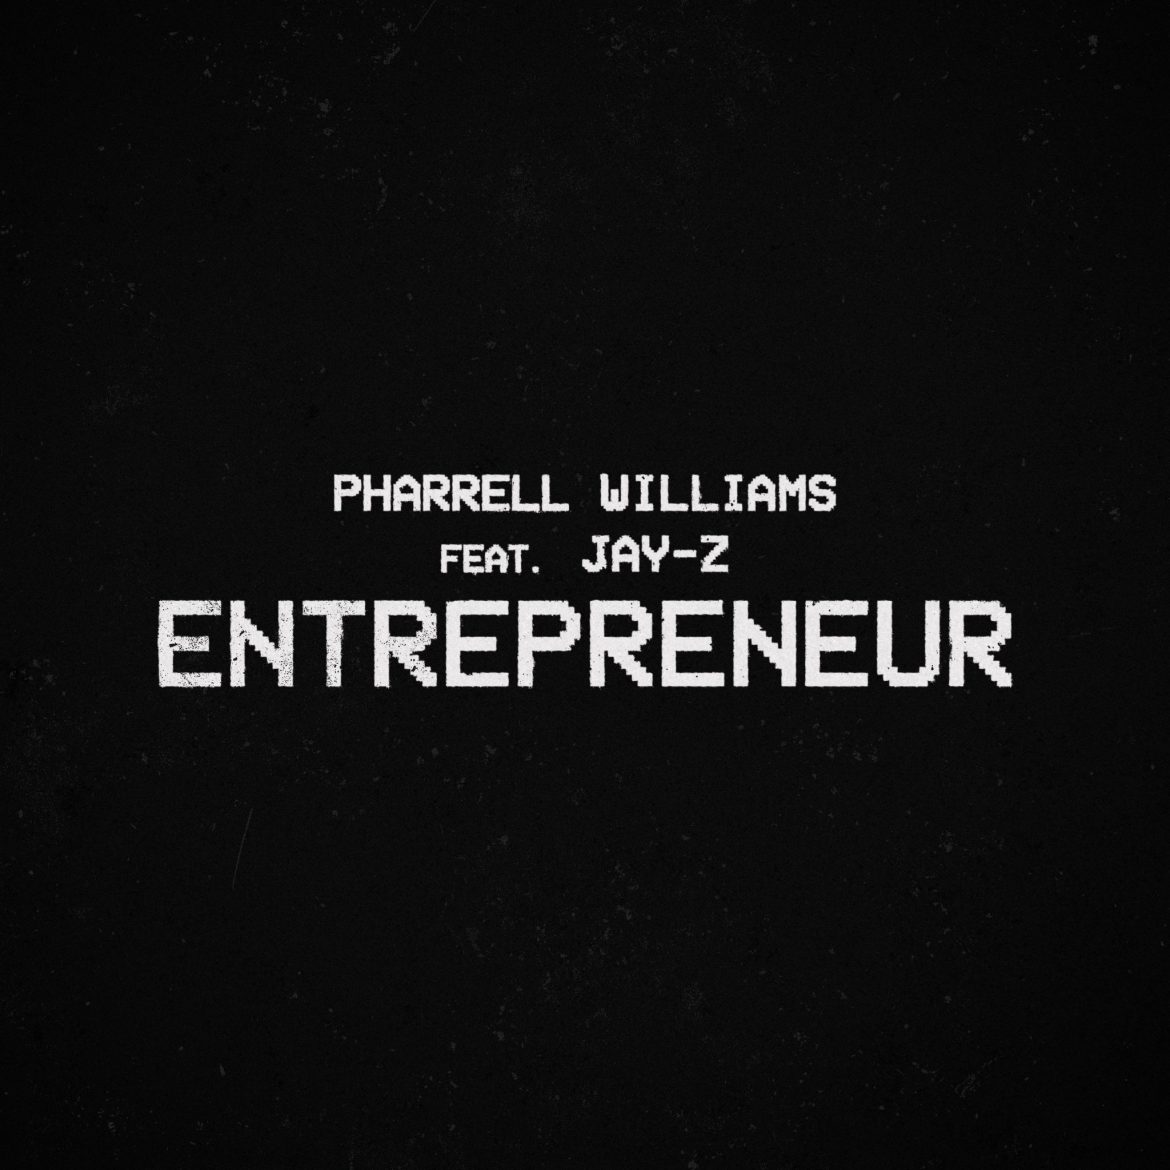 Pharrell Williams i JAY-Z oddają cześć czarnym przedsiębiorcom